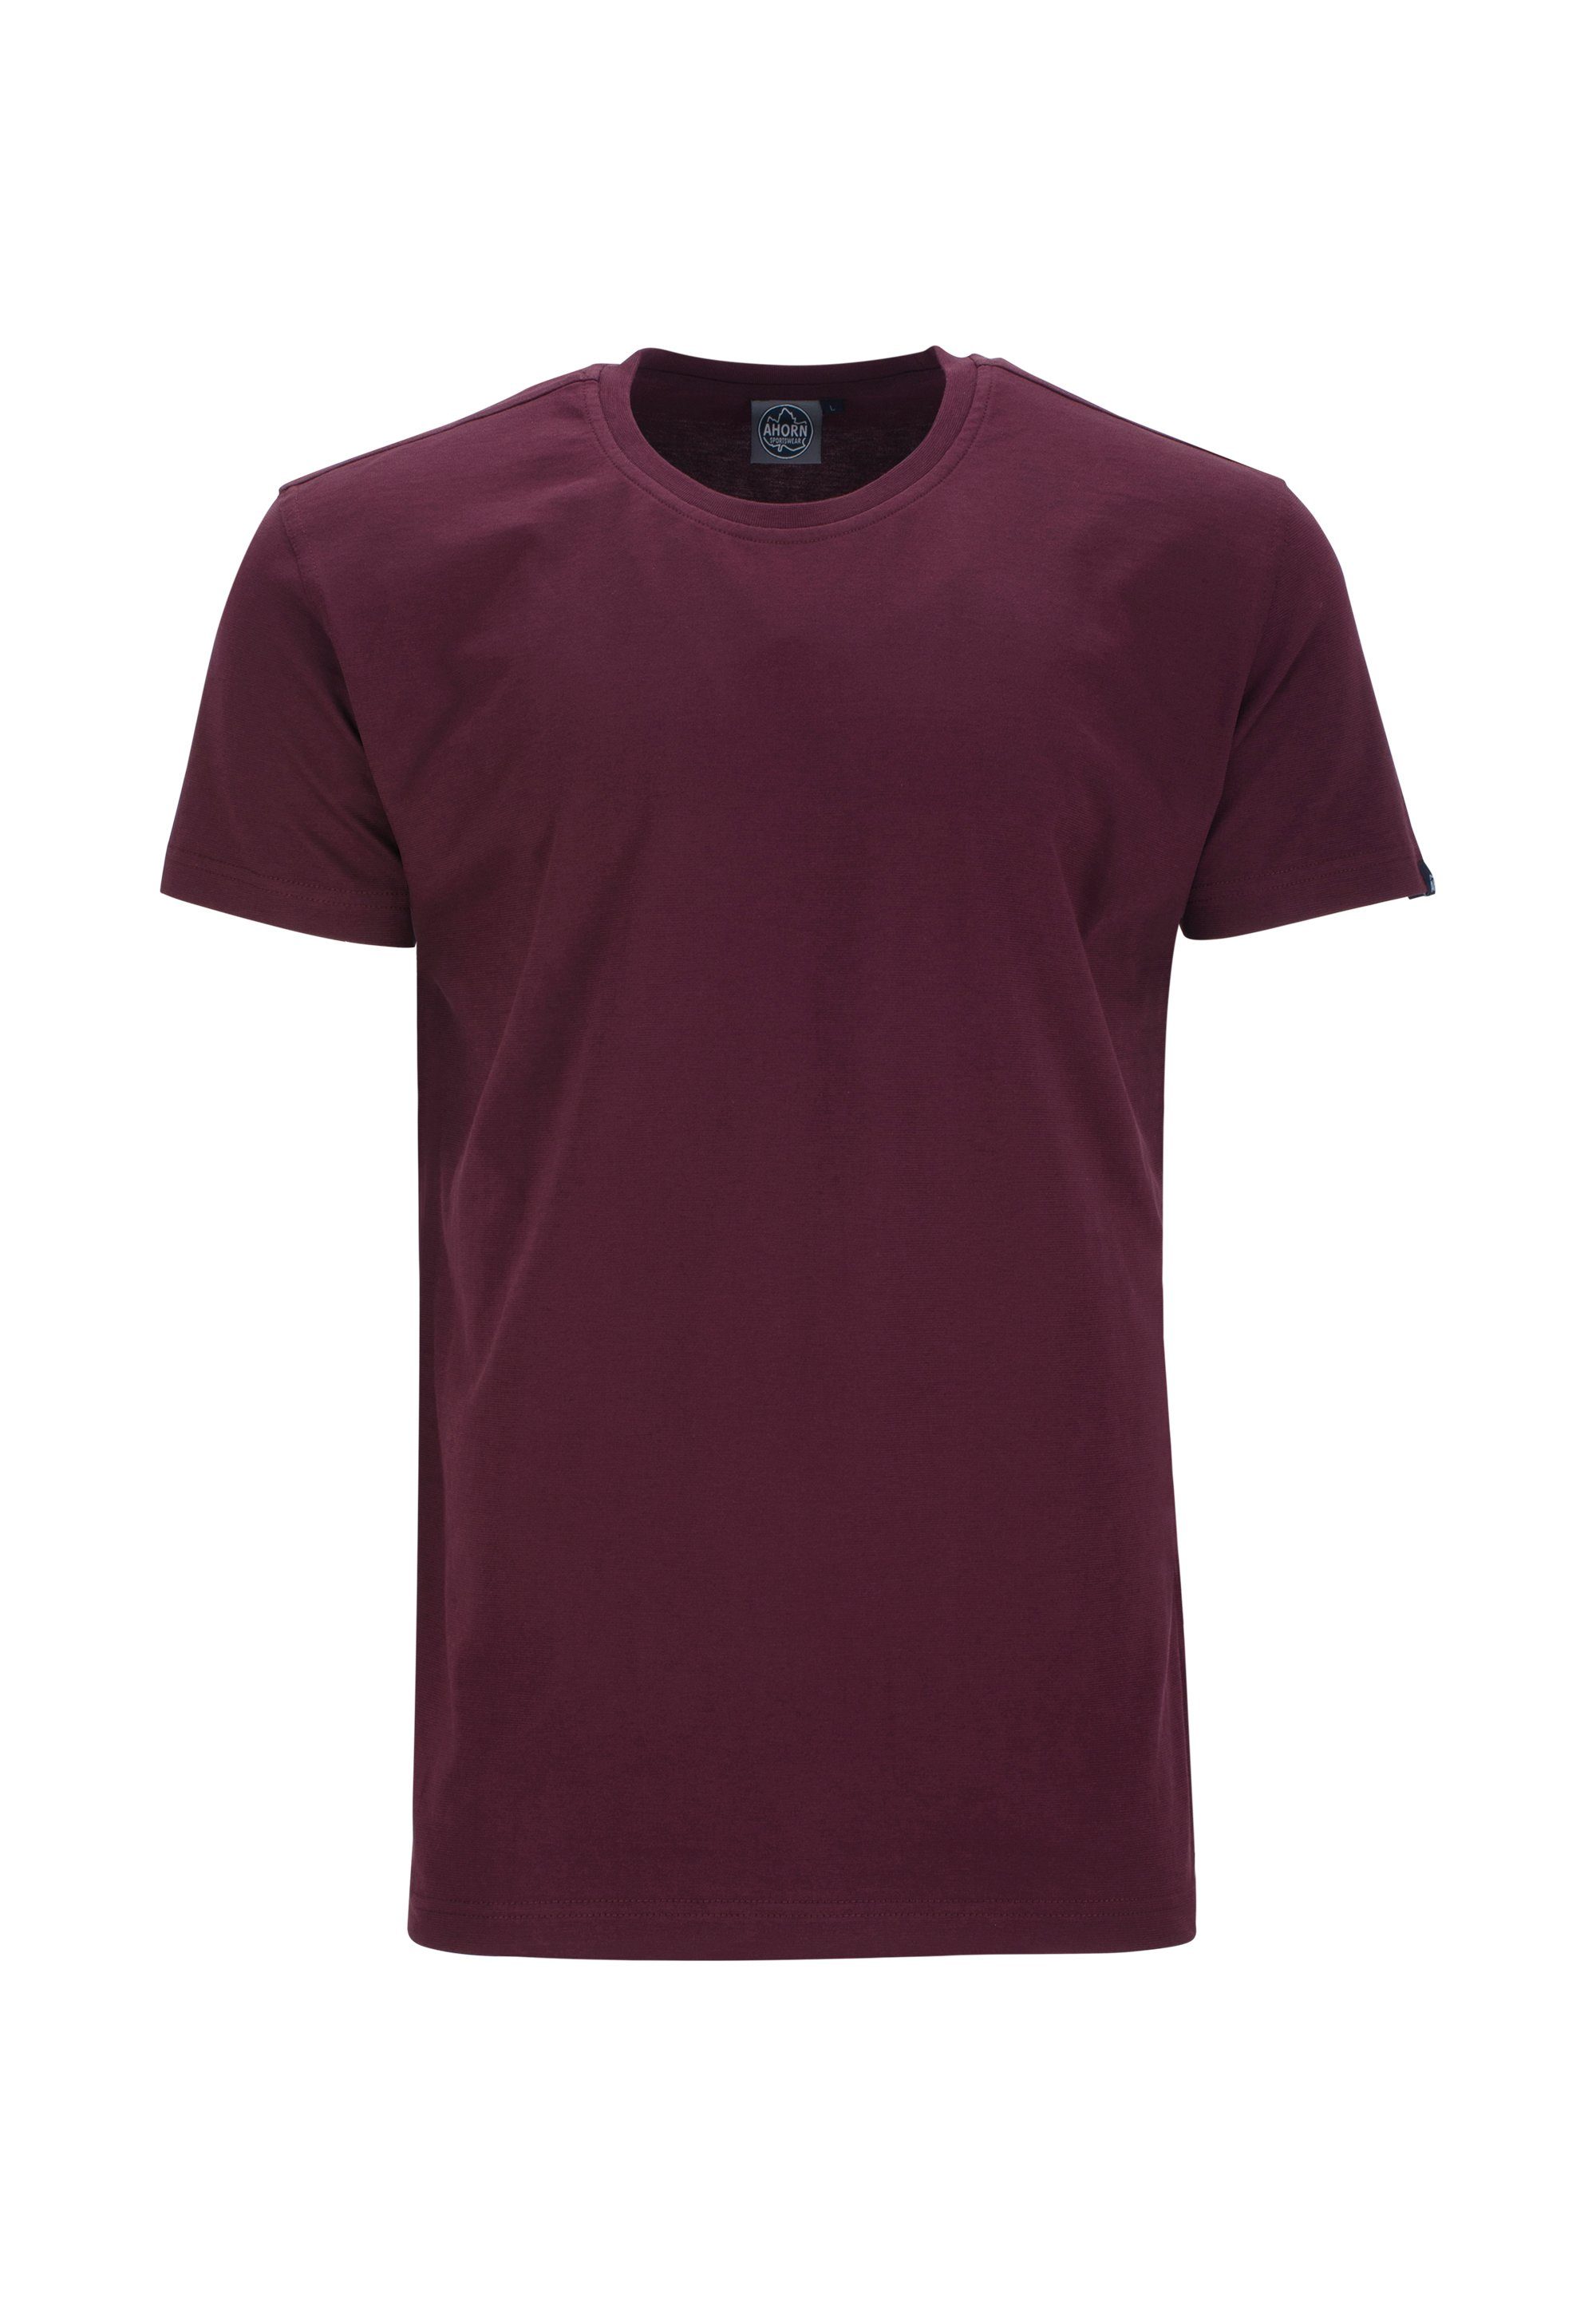 AHORN SPORTSWEAR T-Shirt im klassischen Basic-Look rot